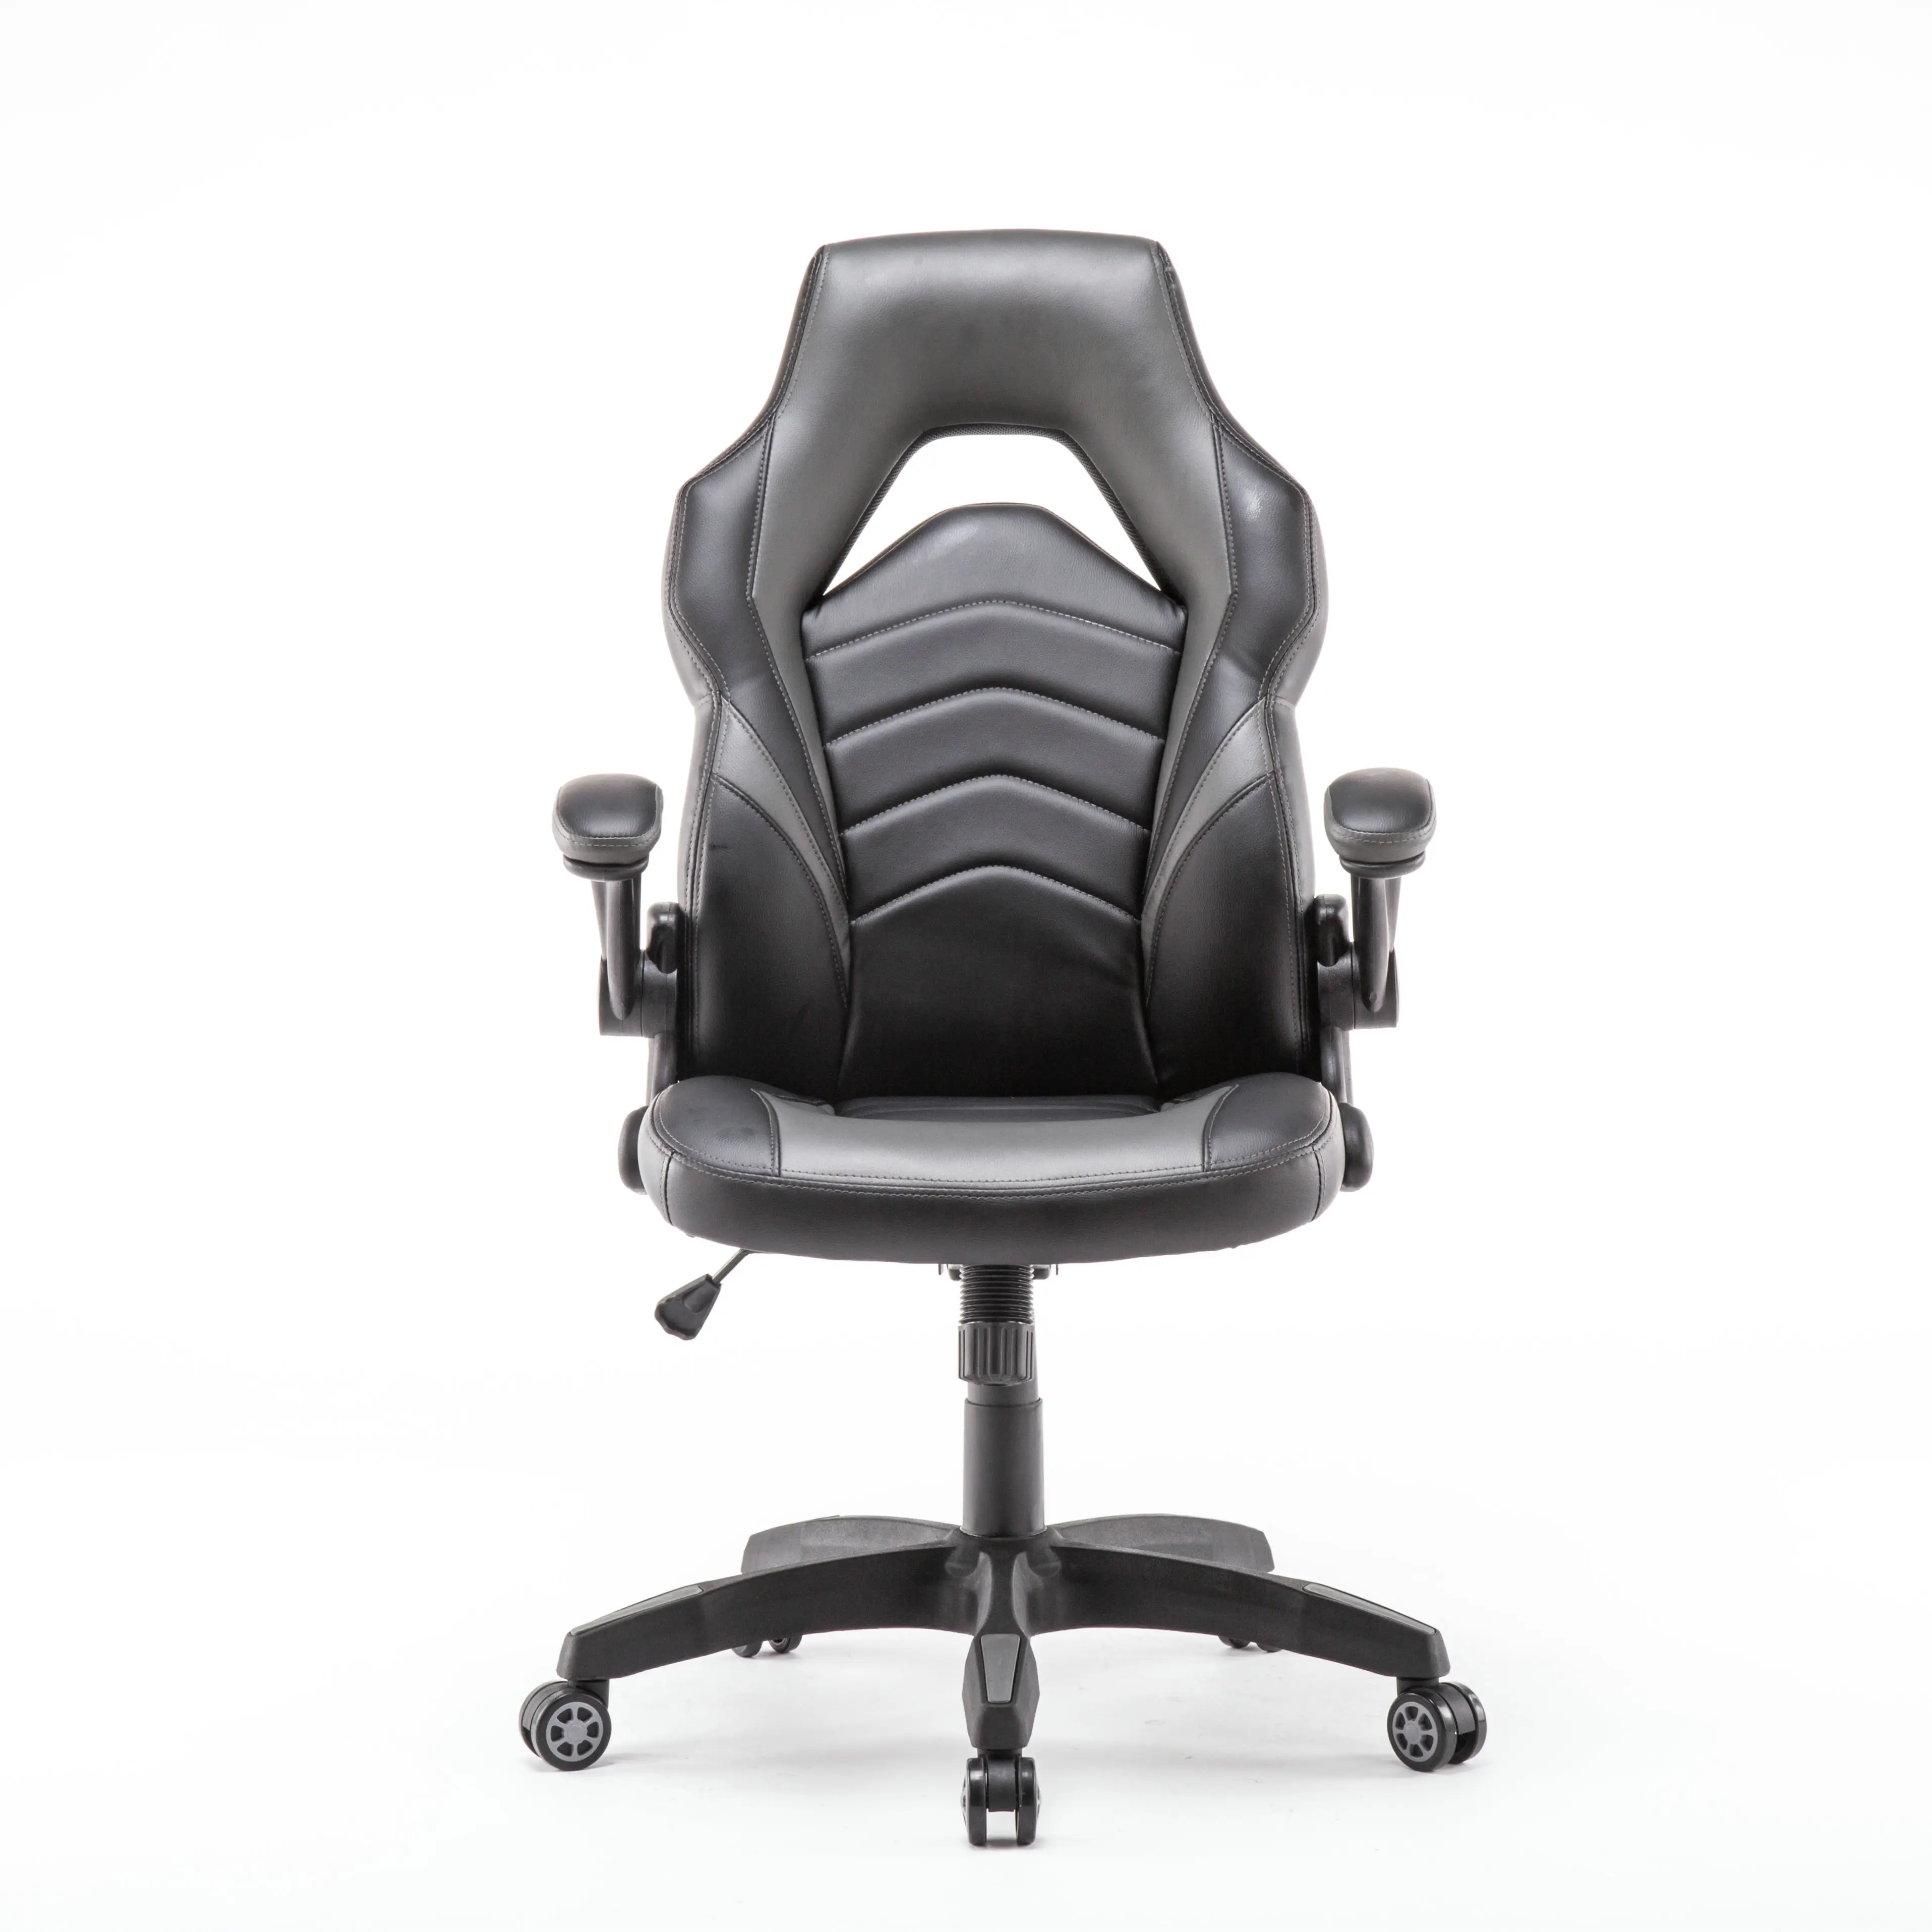 Прямая Продажа с фабрики Anji кожаное гоночное компьютерное кресло для игр для офисного стола кожаное роскошное современное кресло